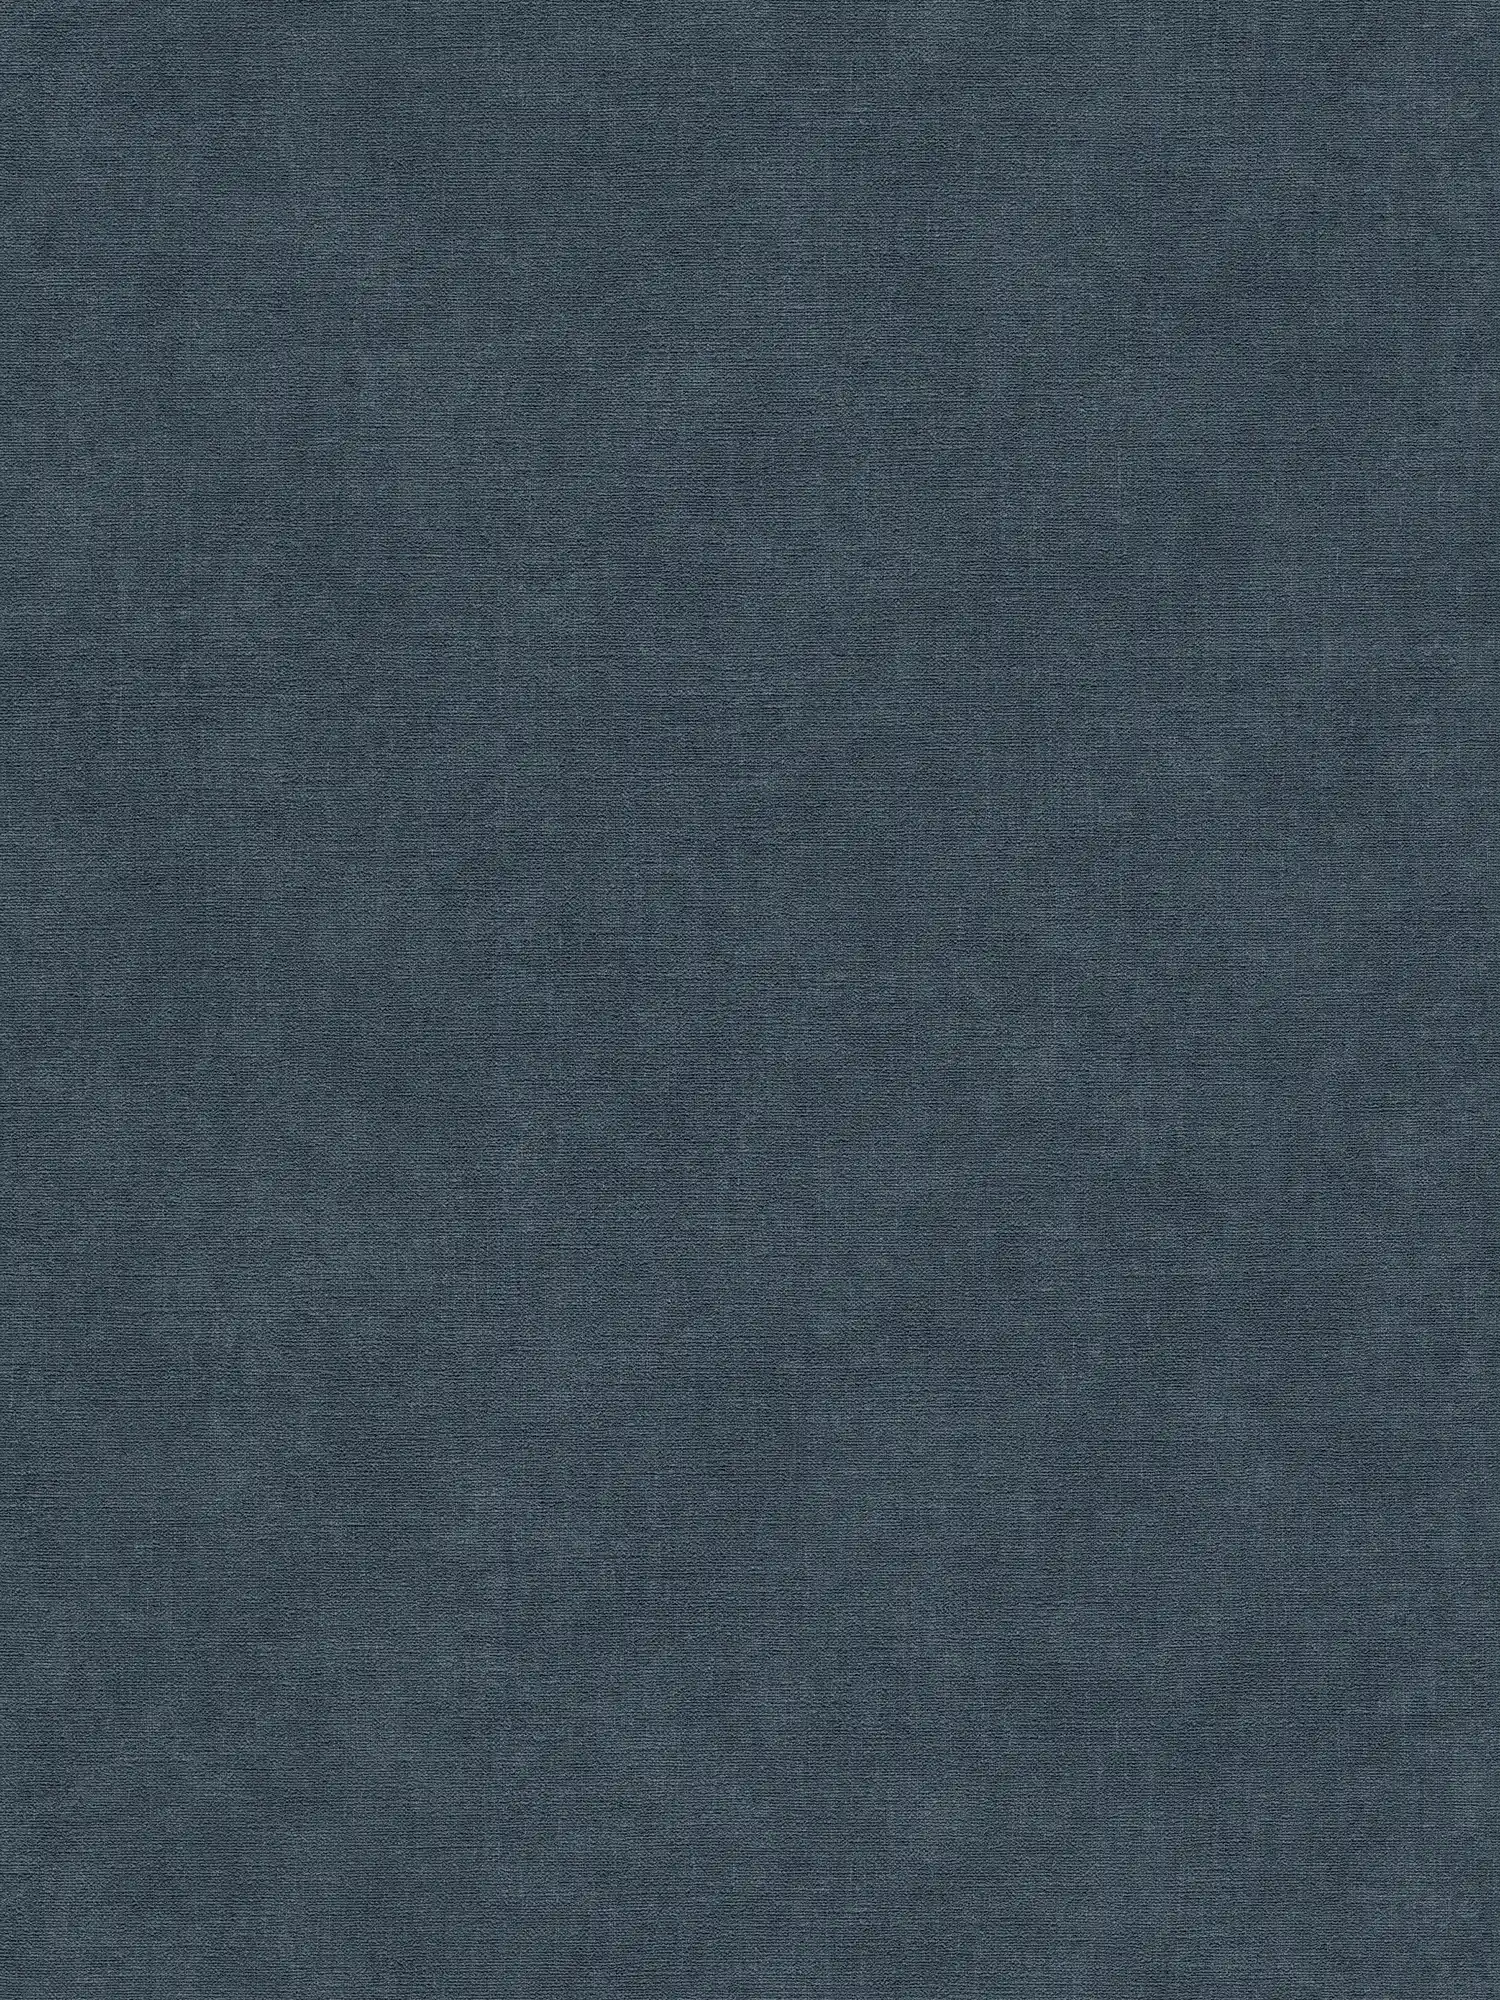 Carta da parati monocolore in tessuto non tessuto con aspetto tessile leggermente strutturato - blu, blu scuro
